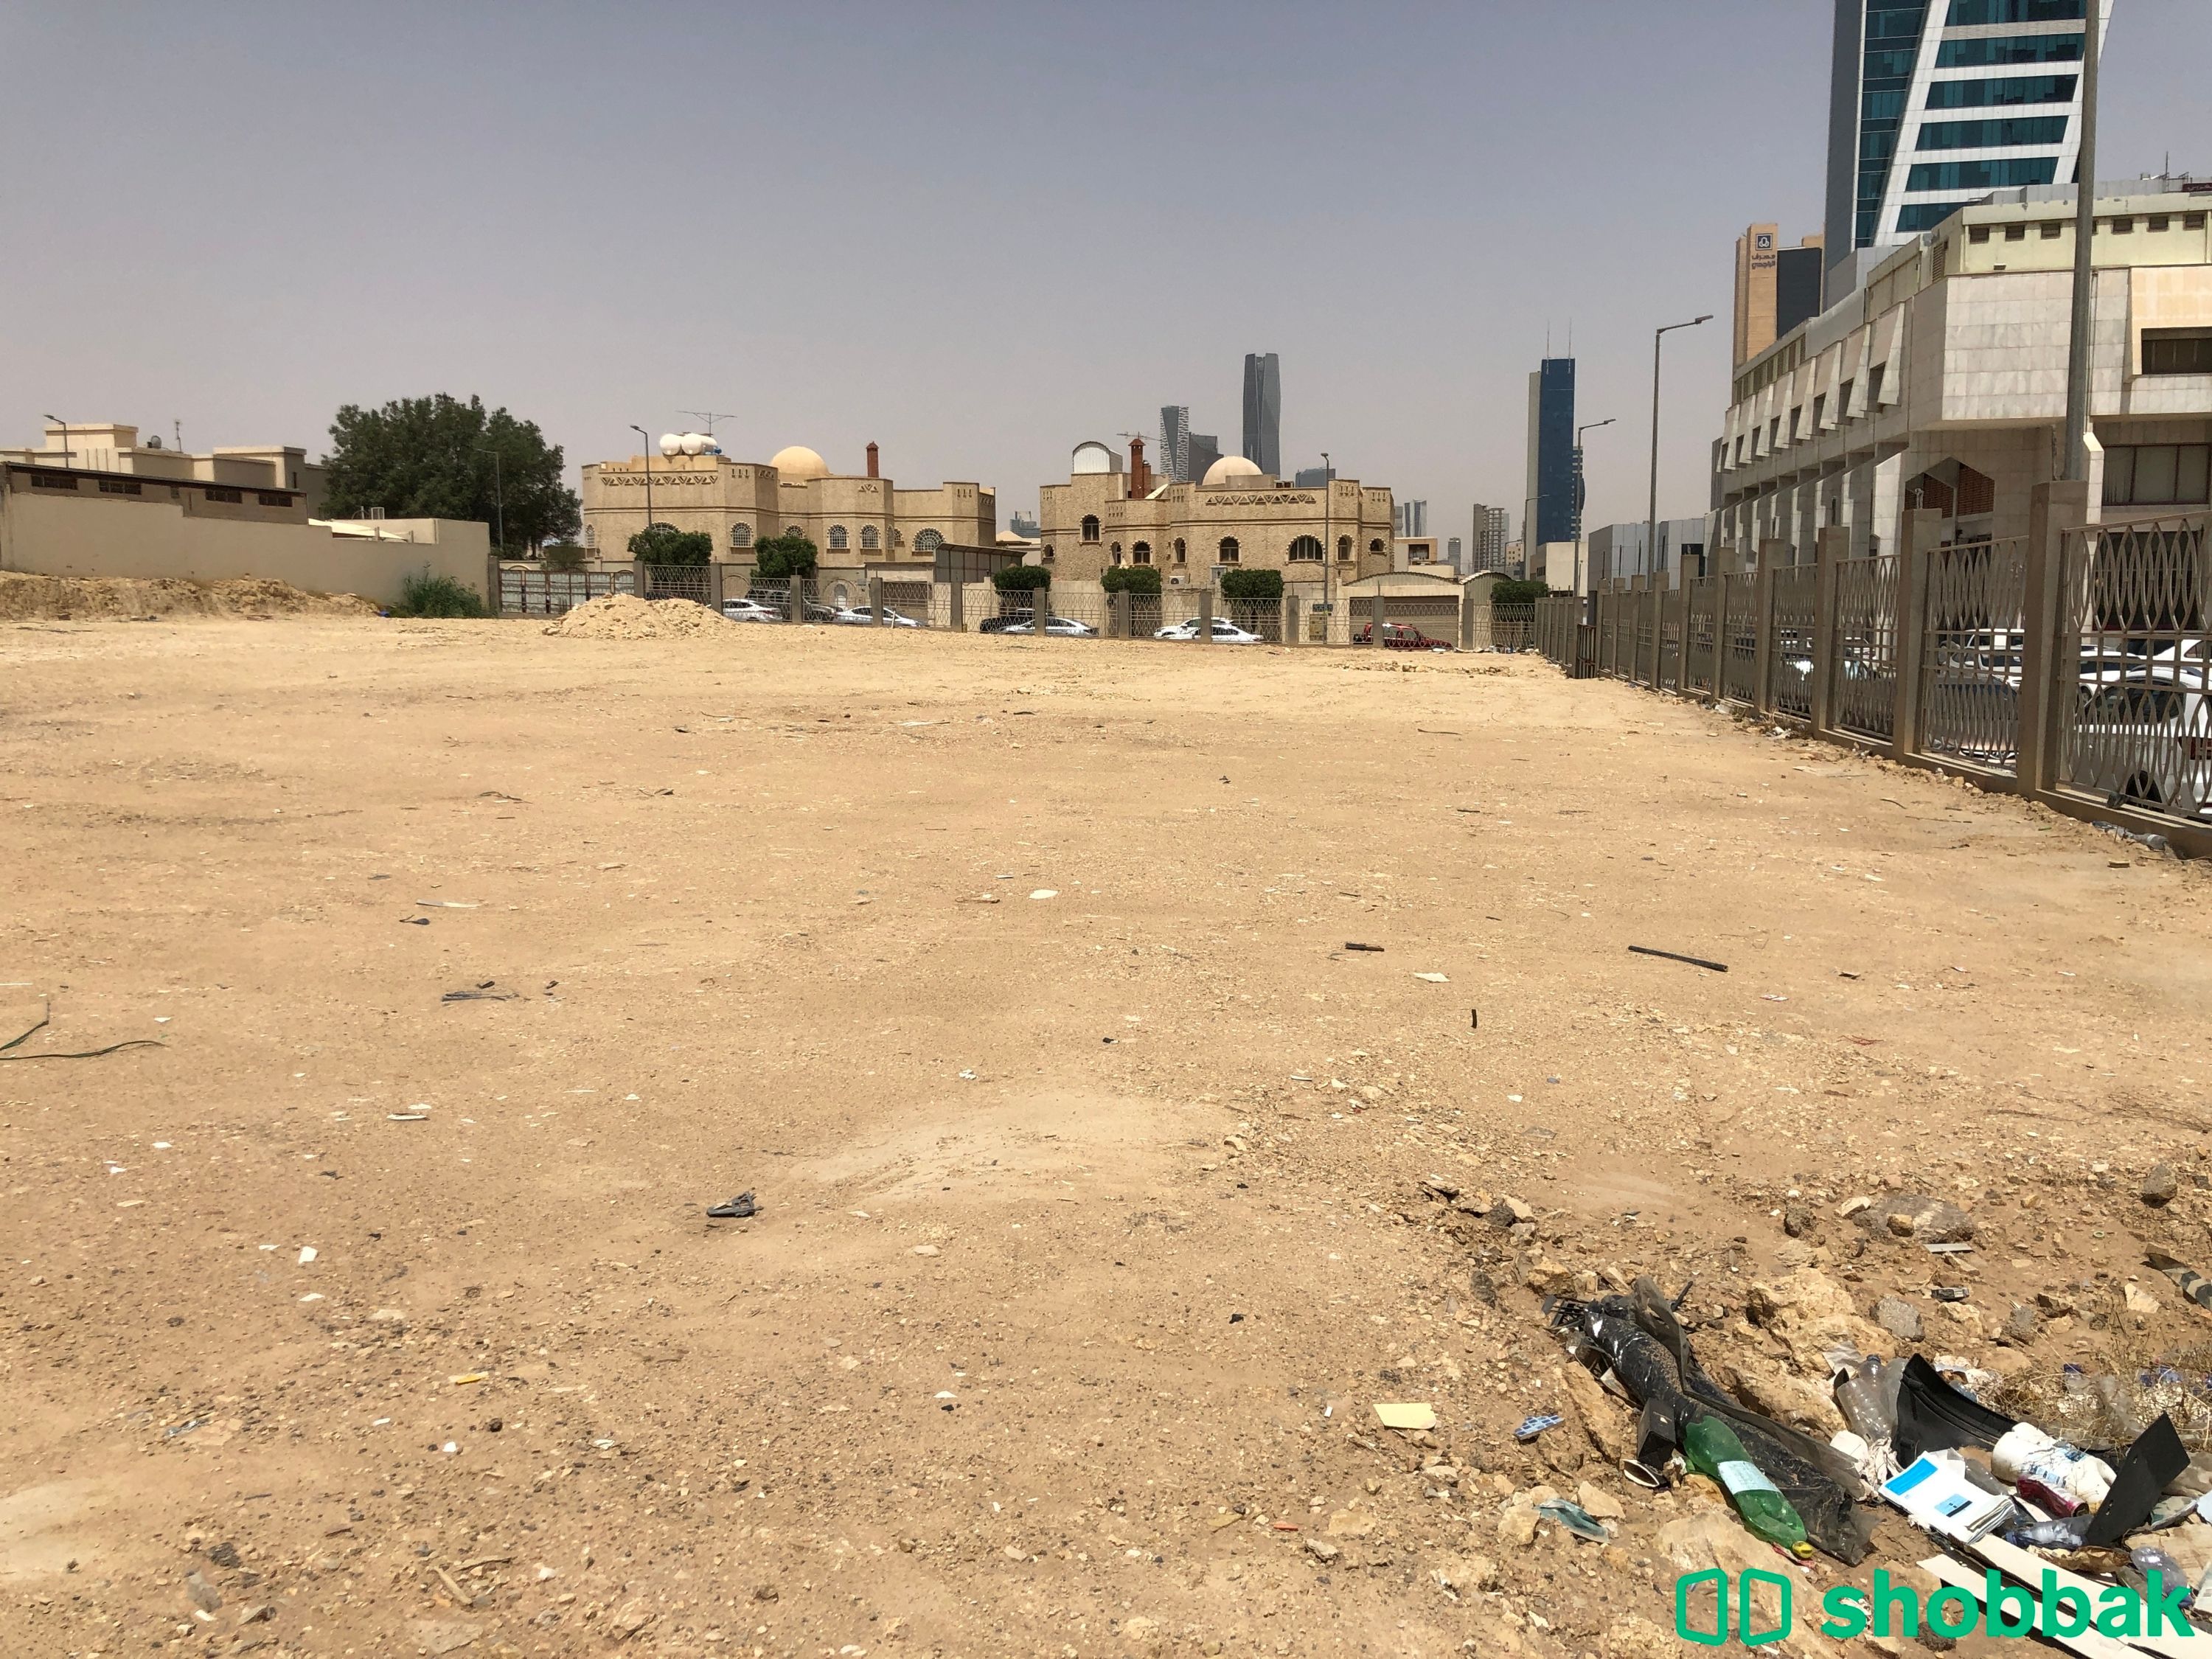 ارض للبيع - شارع يوسف بن ابي اسحاق - حي المحمدية Shobbak Saudi Arabia